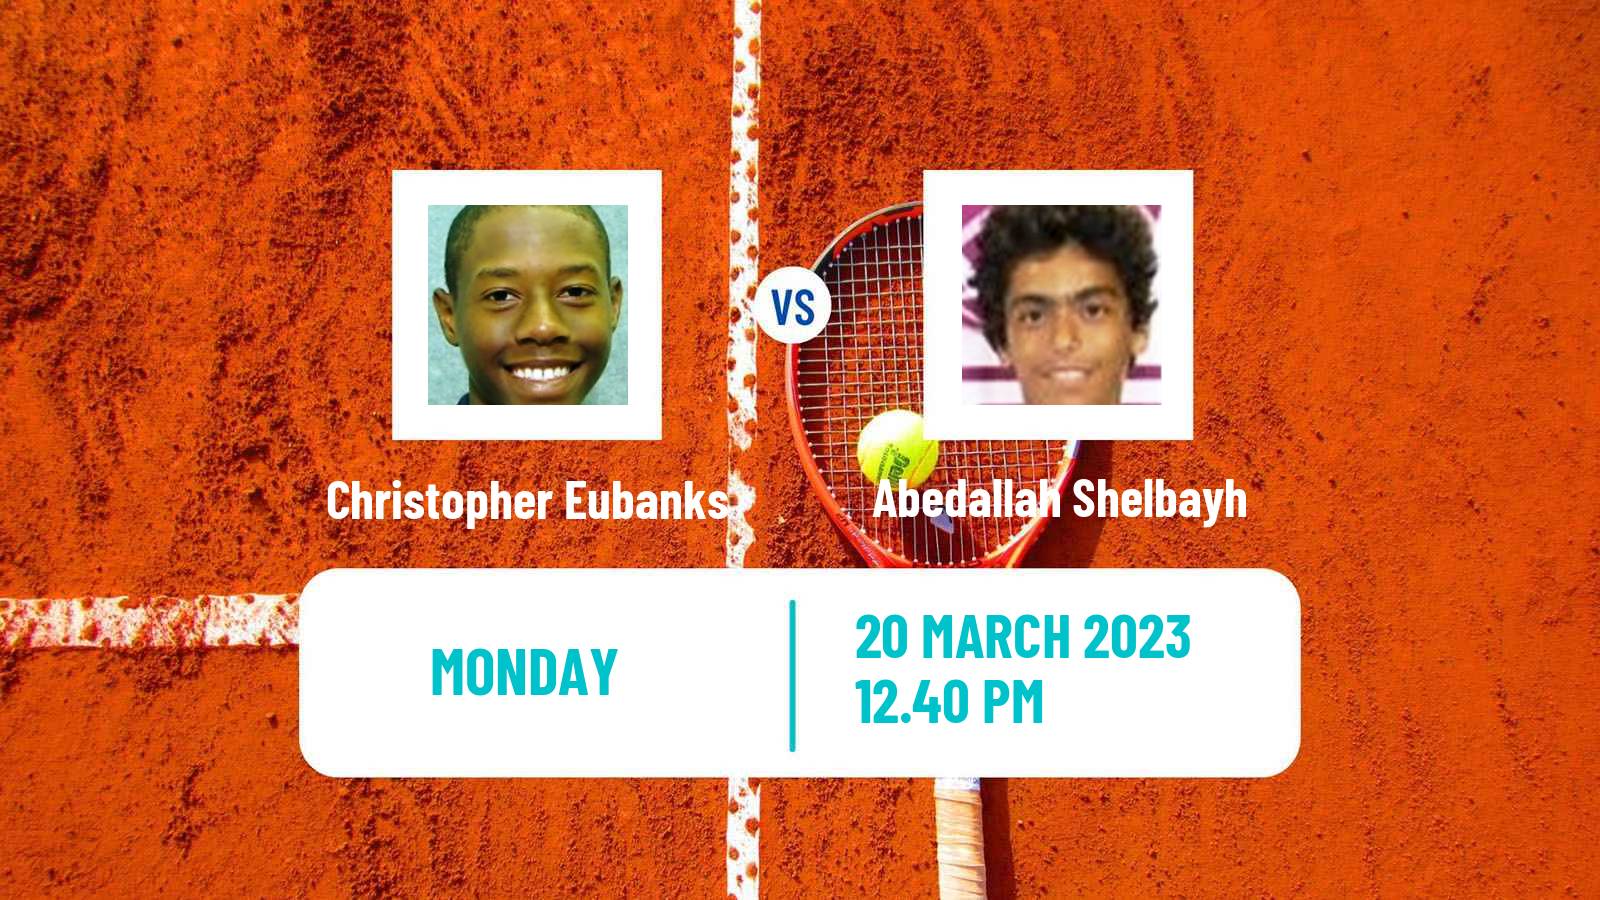 Tennis ATP Miami Christopher Eubanks - Abedallah Shelbayh